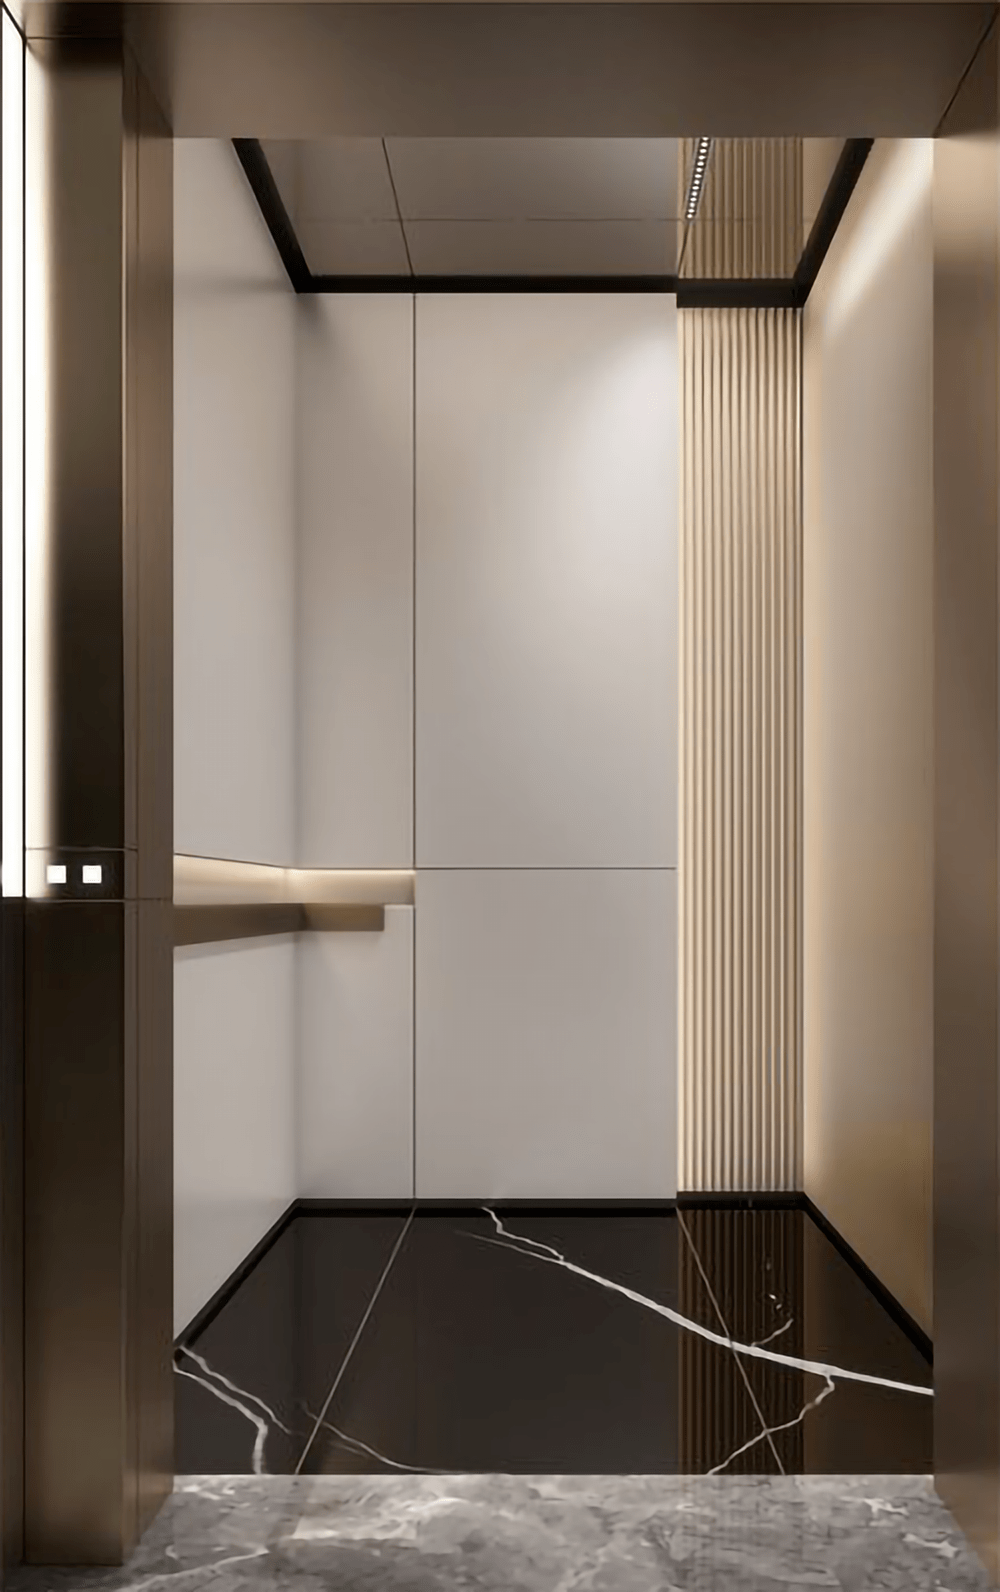 住宅空间设计中的空间尺度与电梯所在地层高保持同一度